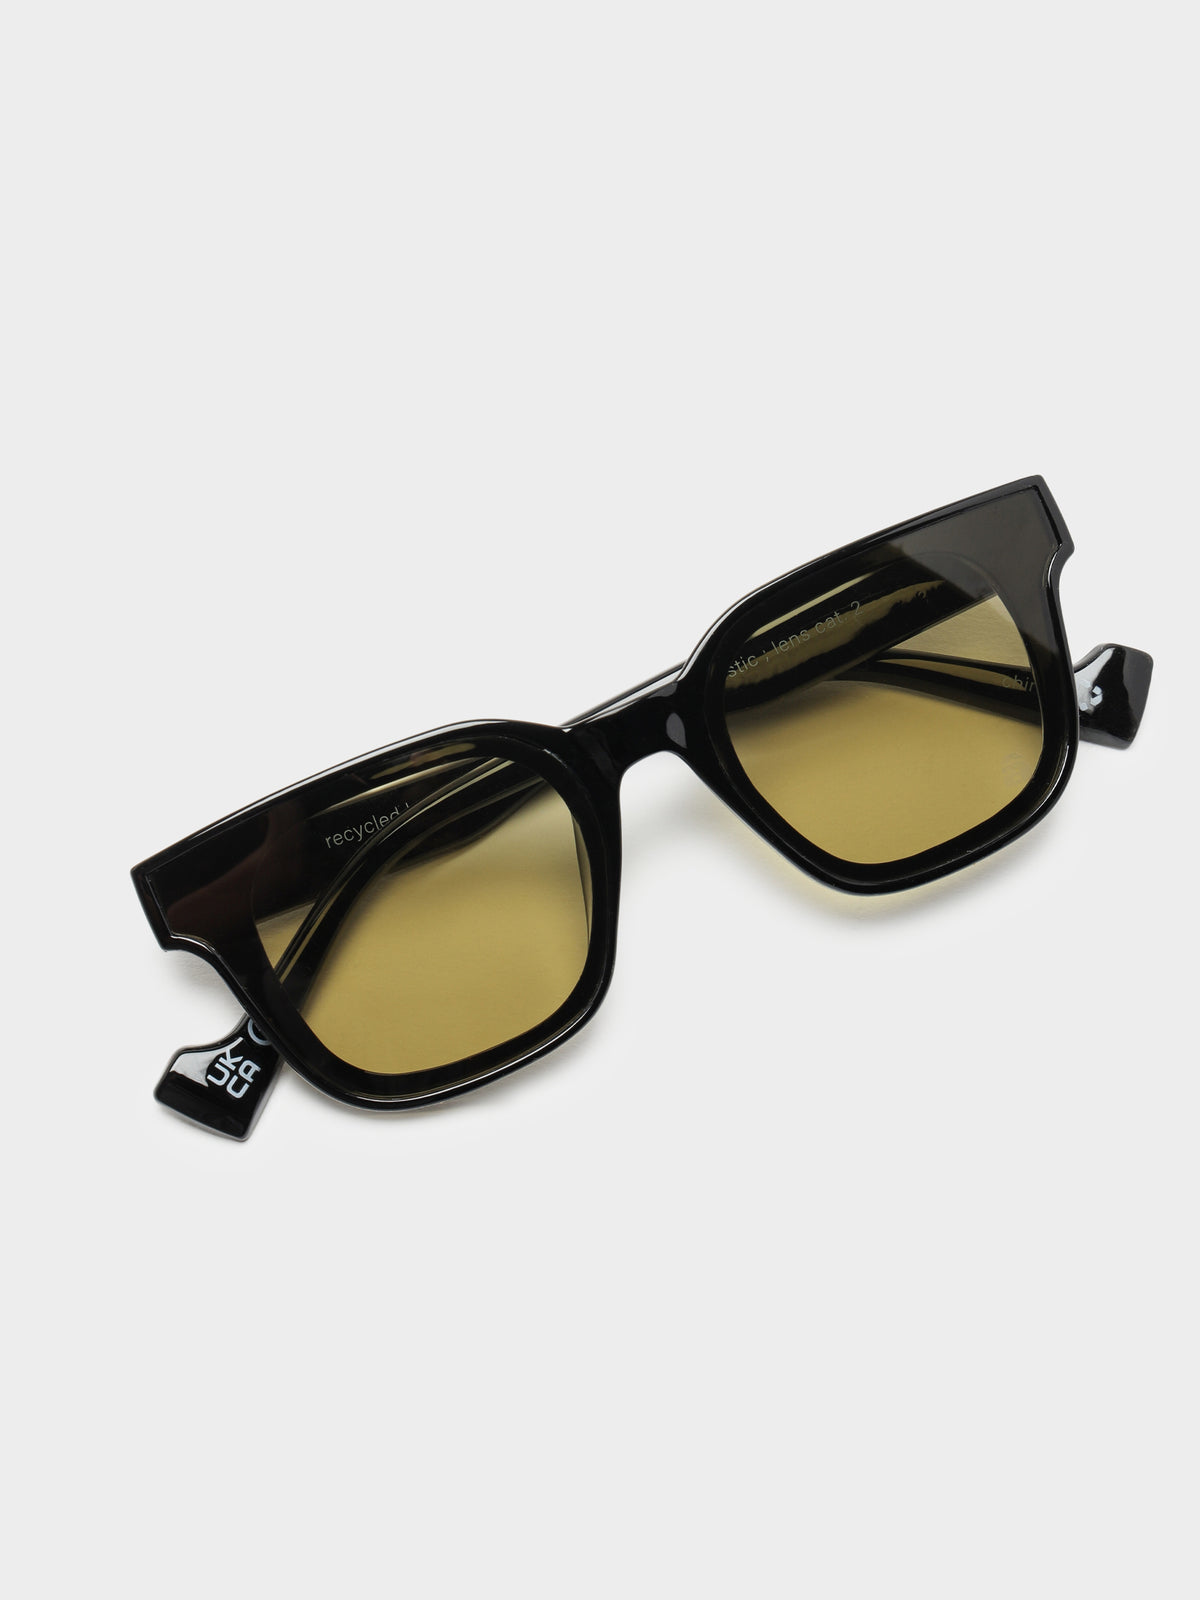 Ellis Sunglasses in Elysium Black